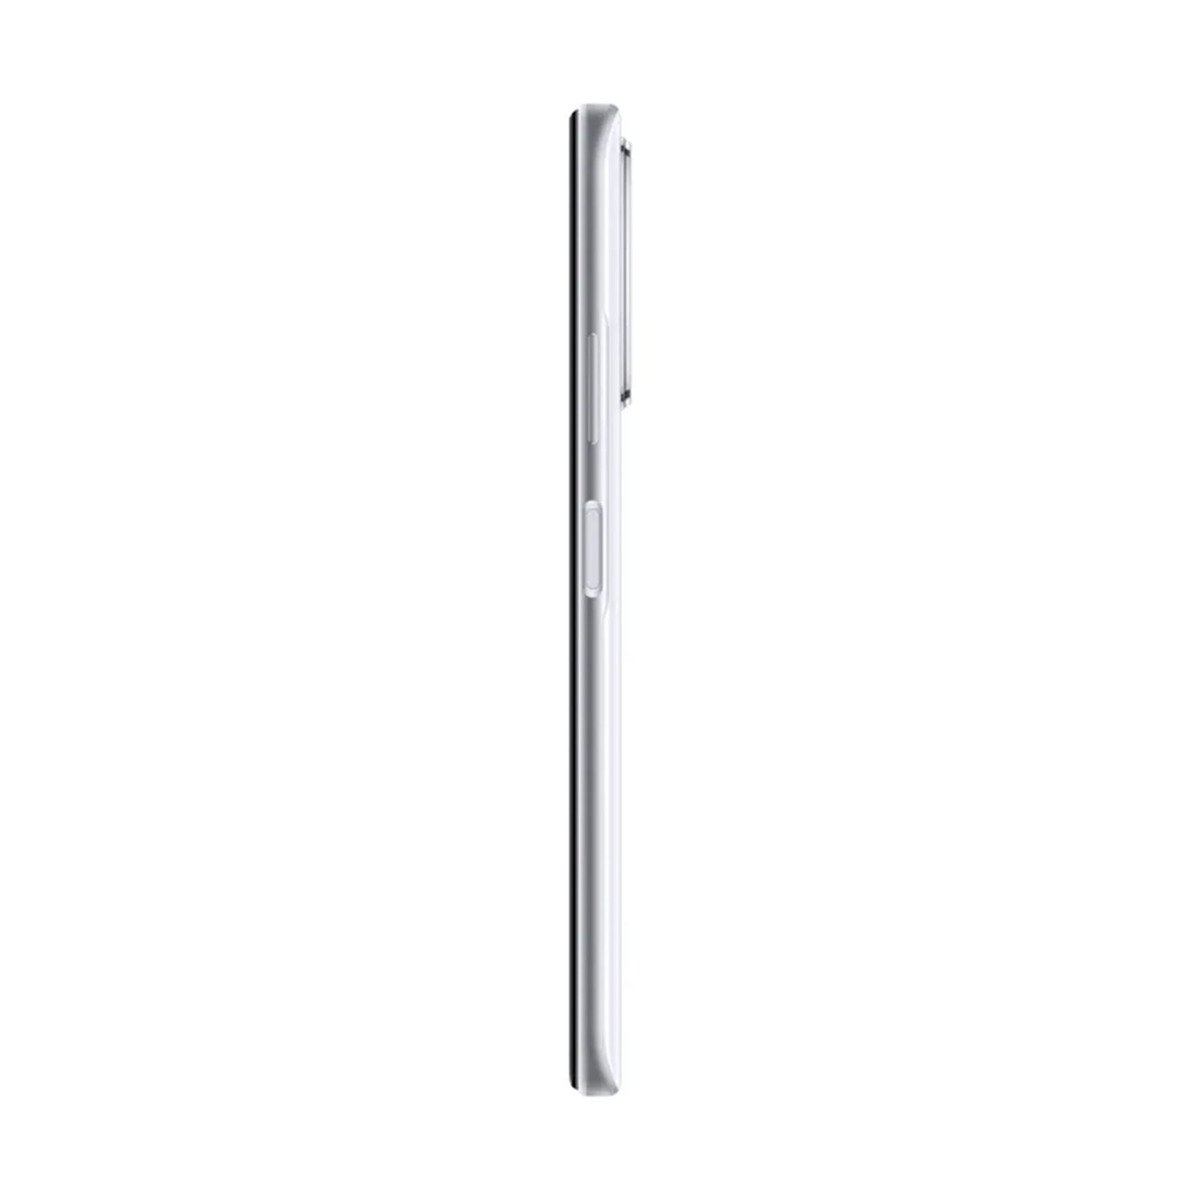 Huawei Nova Y70 4GB 128GB Pearl White+Buds SE